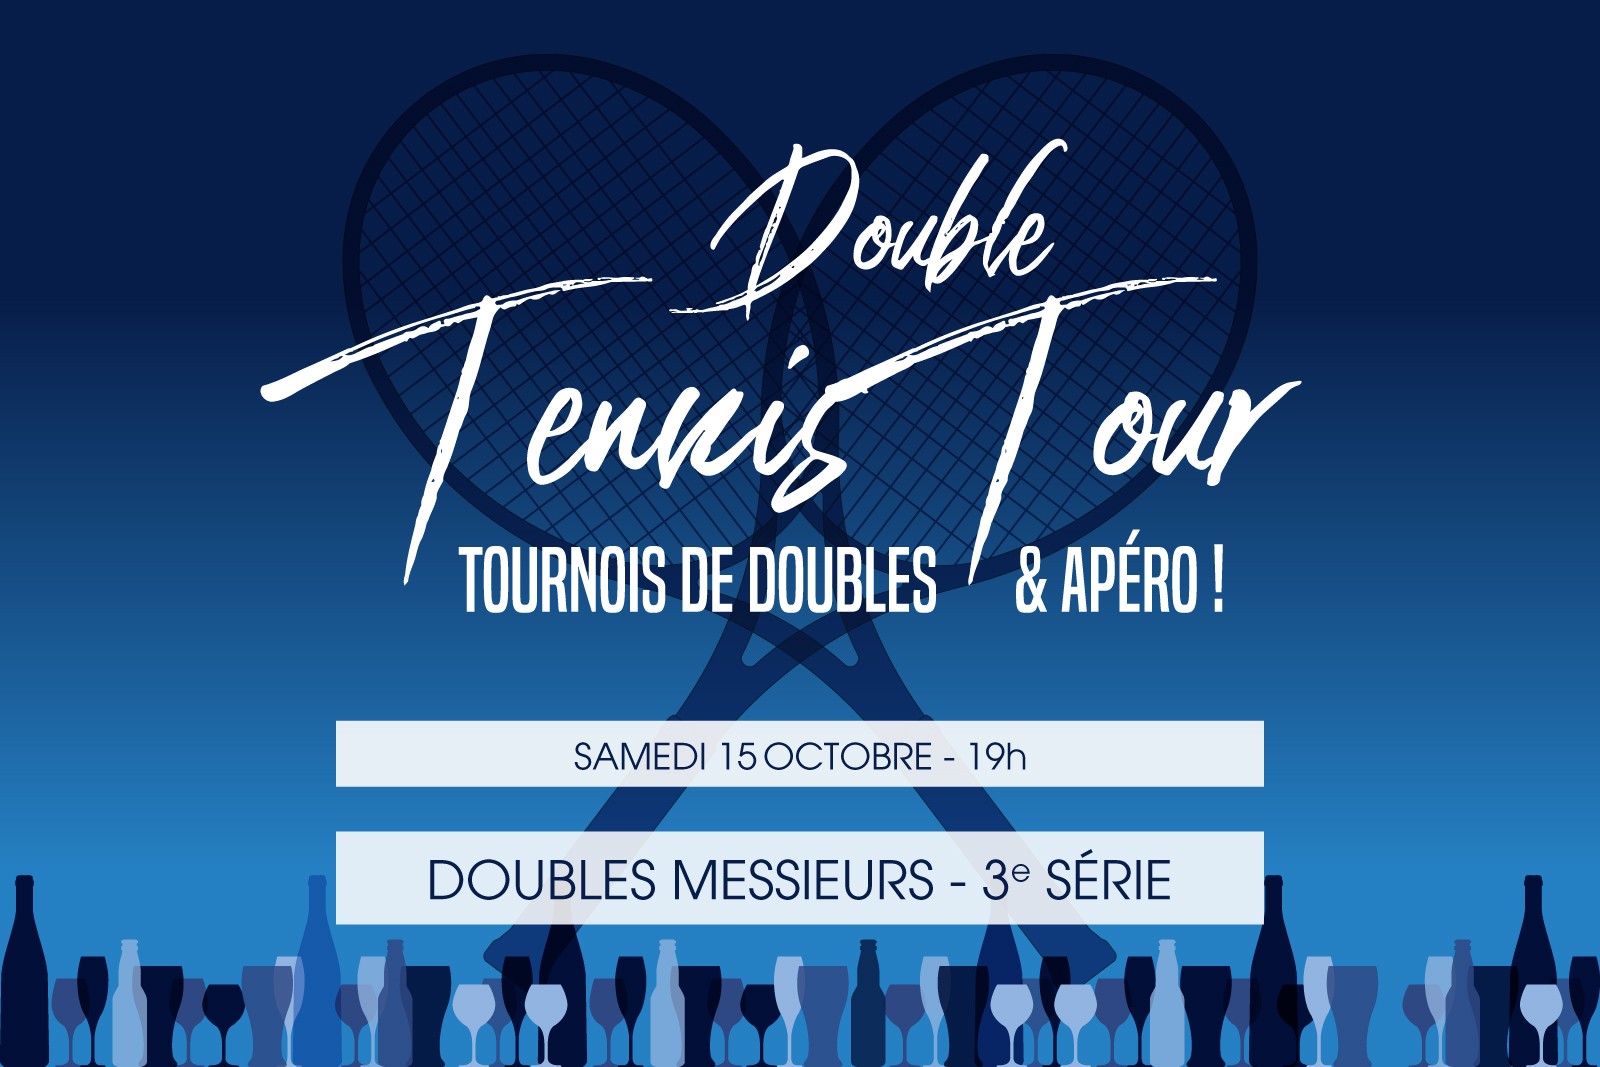 DOUBLE TENNIS TOUR - TMC doubles messieurs 3ème série